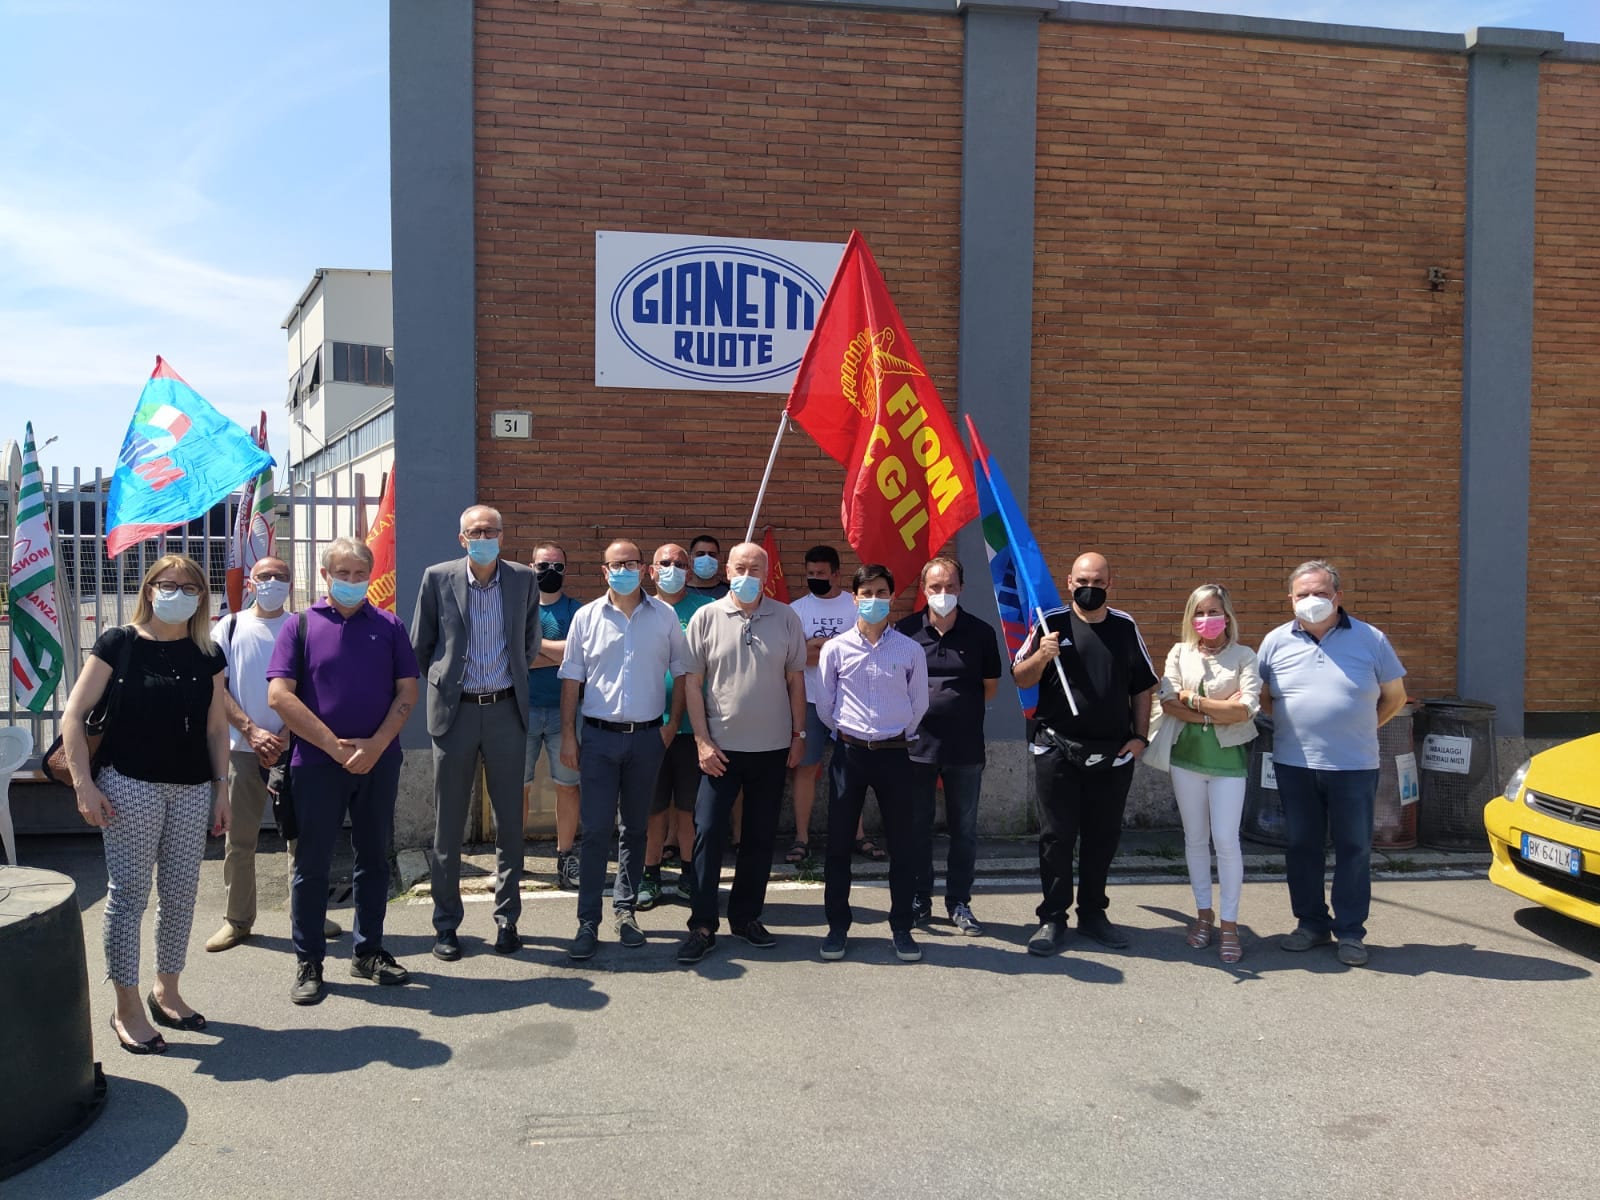 Chiusura Gianetti: amministratori locali (coi sindaci di Saronno e Caronno) al presidio dei lavoratori